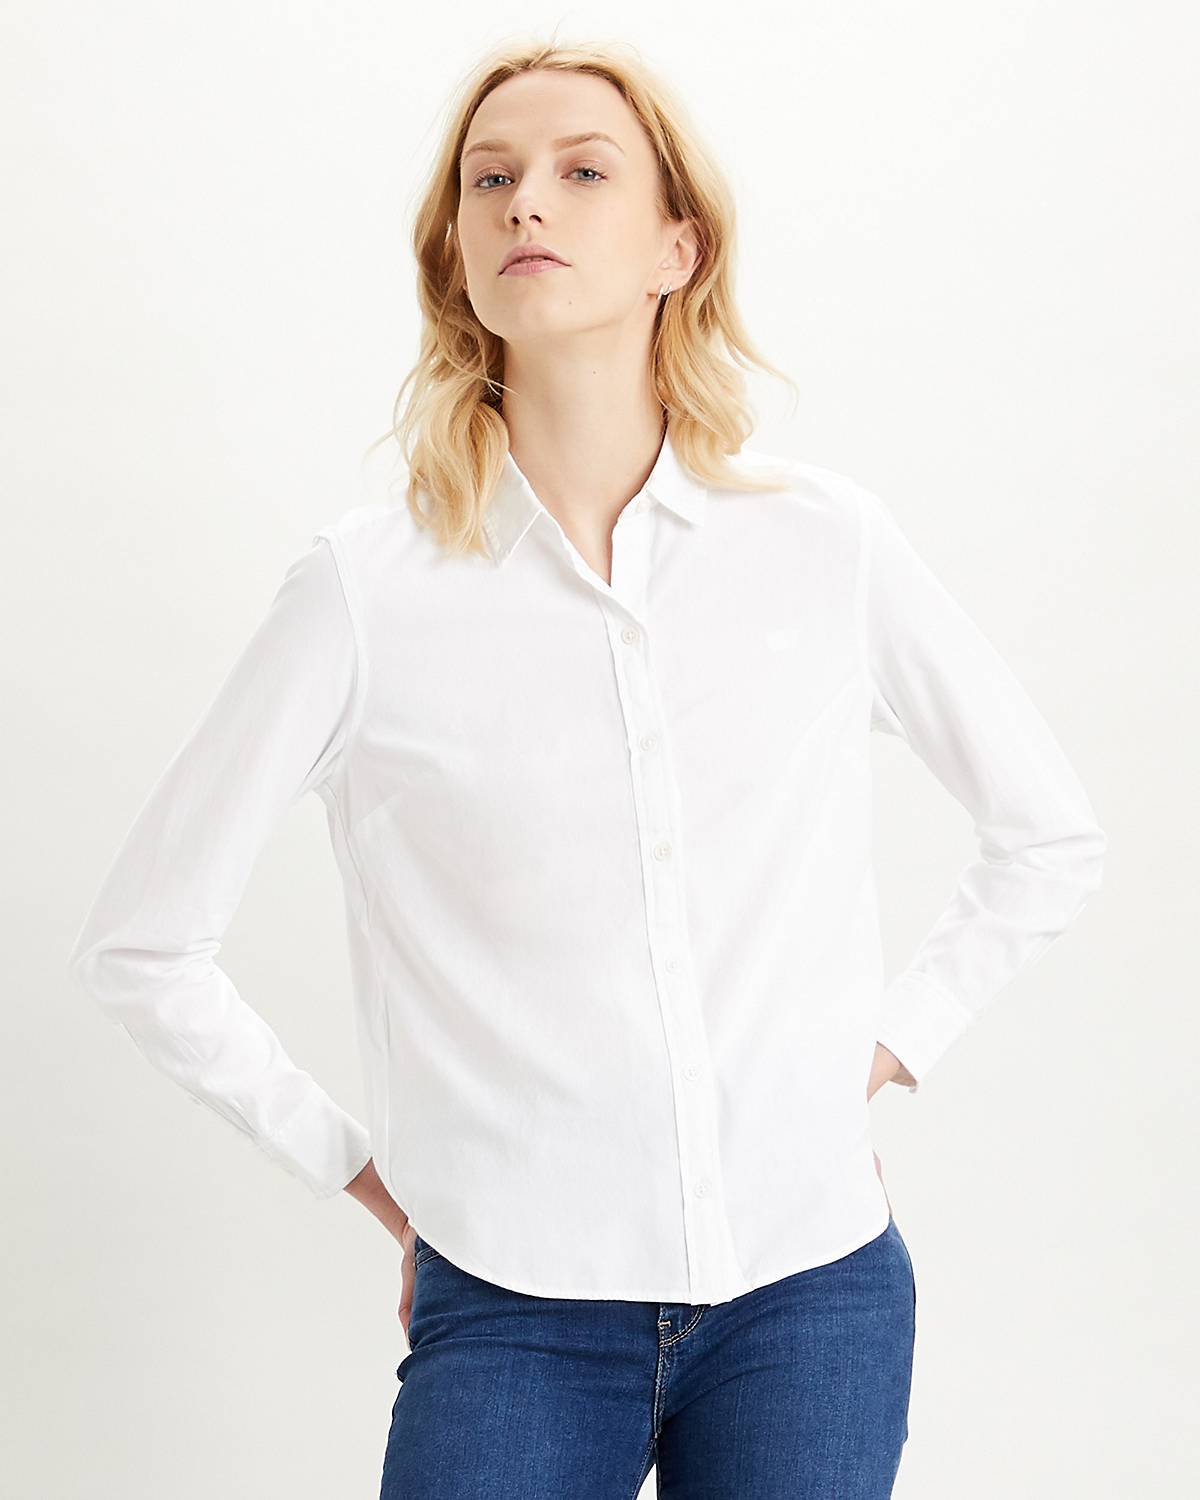 Buy Women's Blouses White 3/4 Sleeve Tops Online